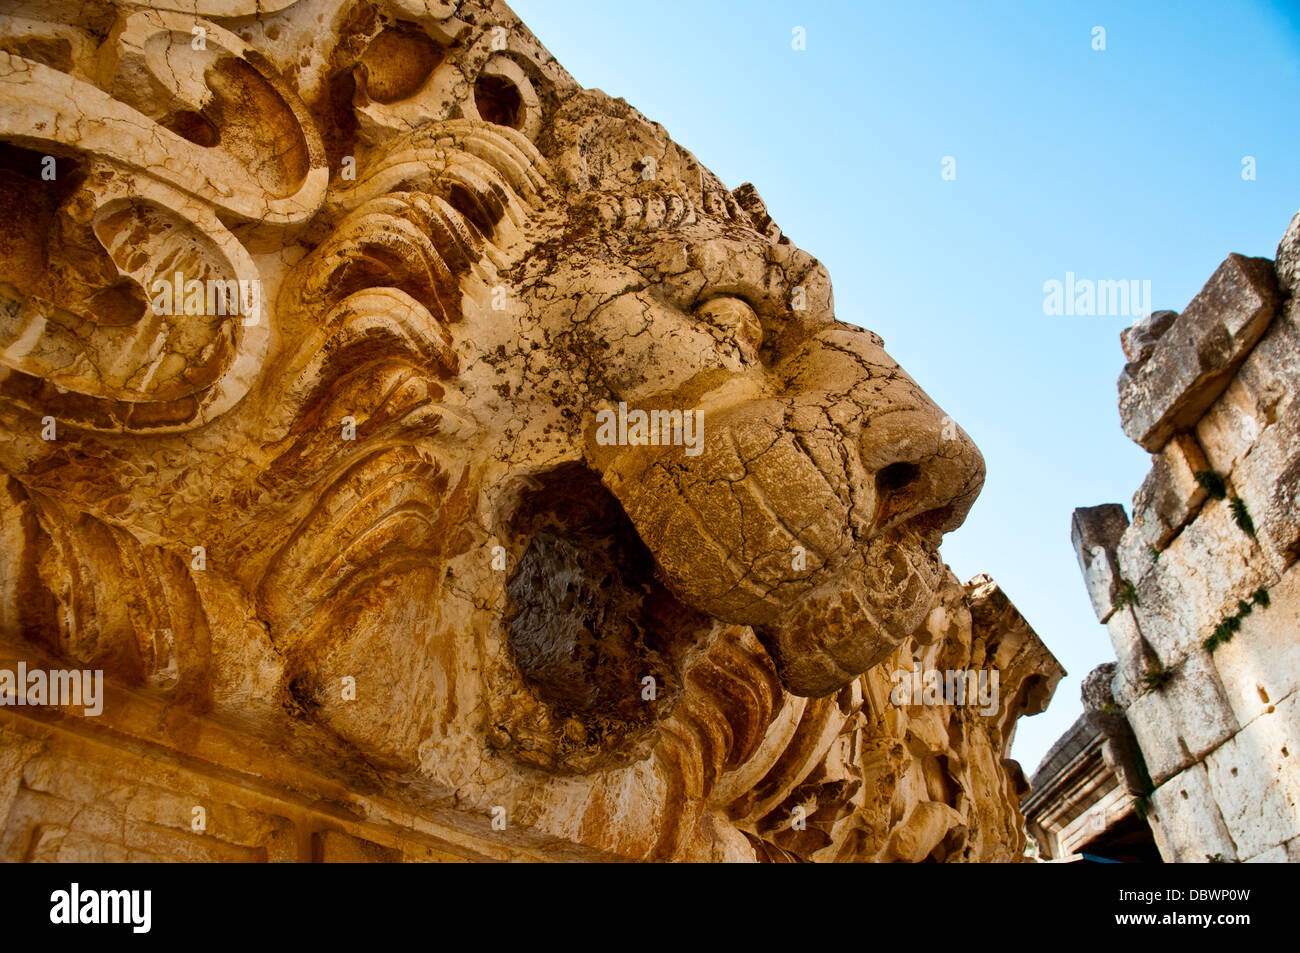 Testa di Lione statua . Sito archeologico di Baalbek,UNESCO - Sito Patrimonio dell'umanità. Bekaa valley. Il Libano. Foto Stock